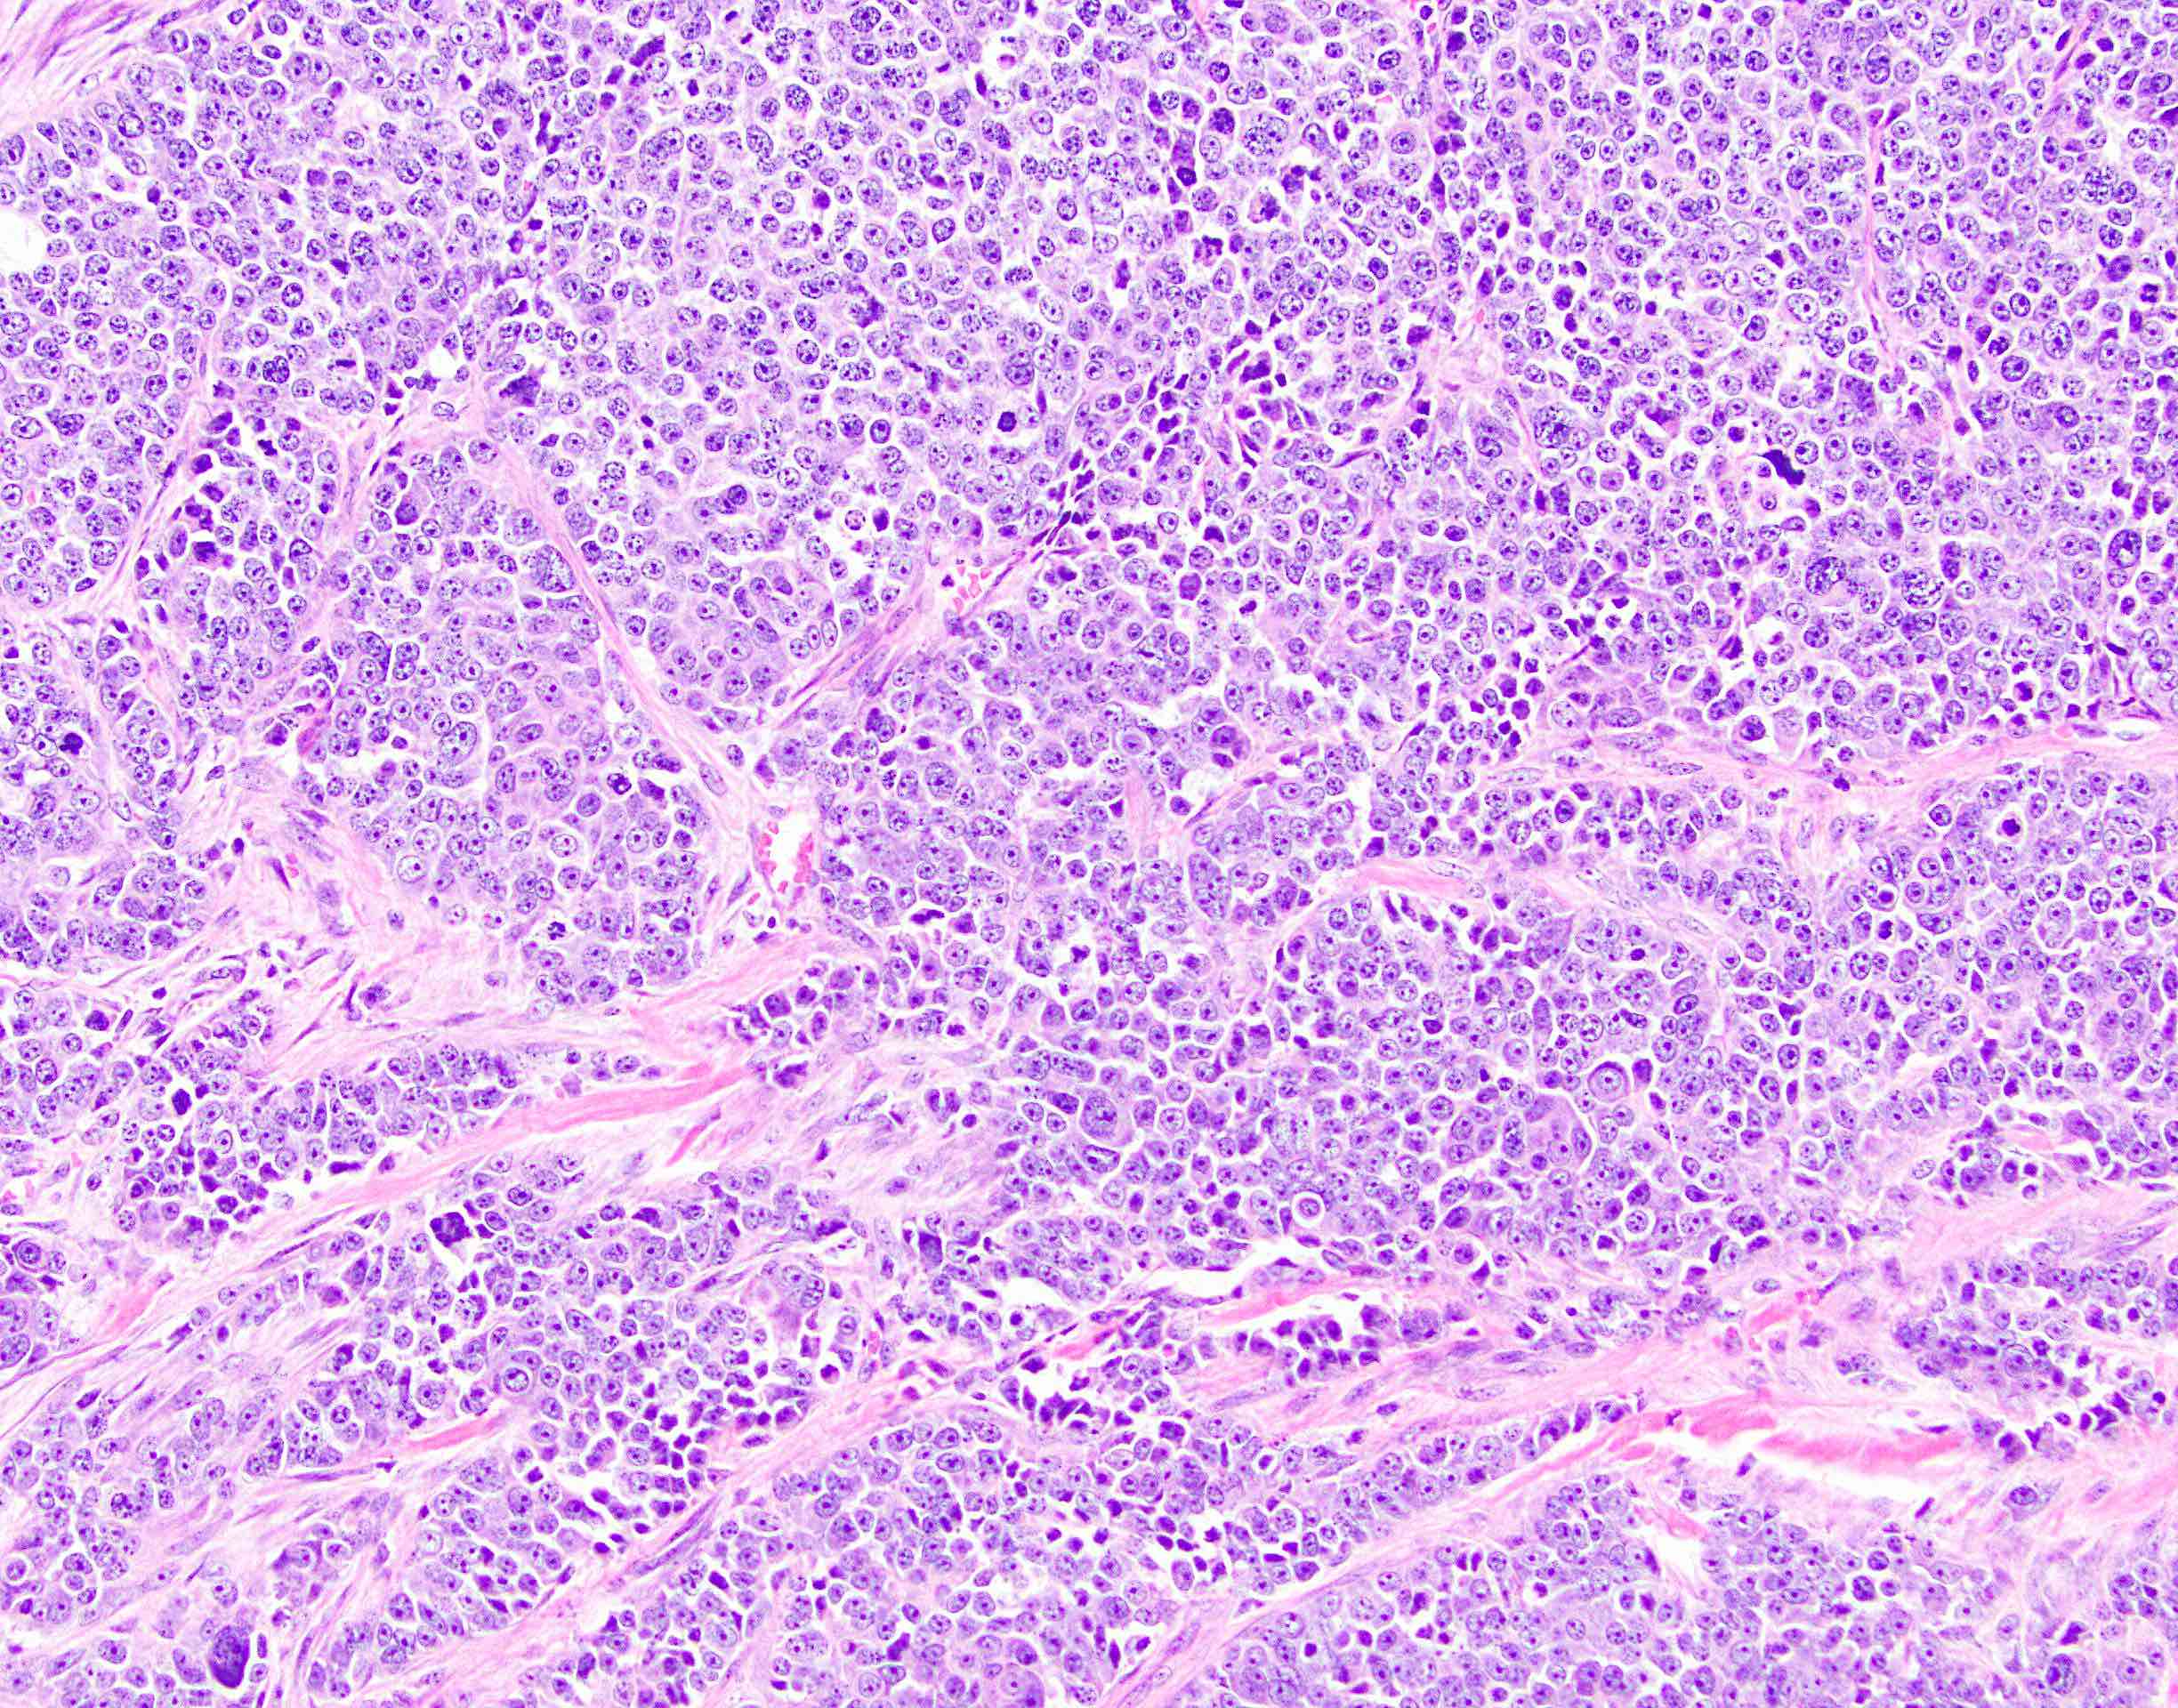 Neuroendocrine cancer spread to liver and bones, Metastatic cancer colon liver